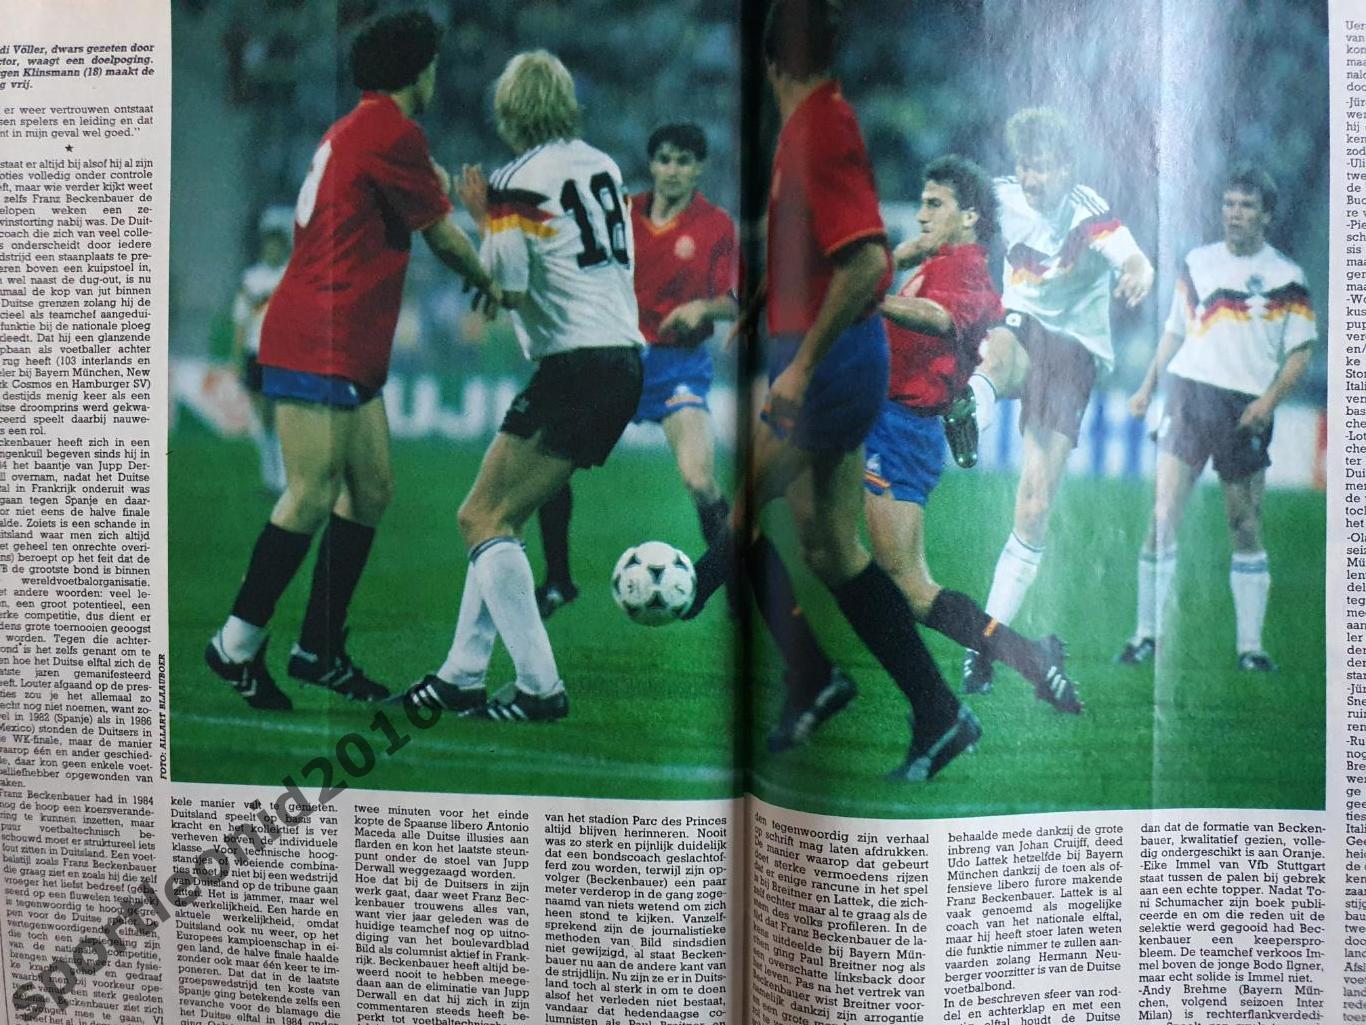 Voetbal International 1988.Годовая подписка.52 номера +4 спецвыпуска к Евро-88.9 1